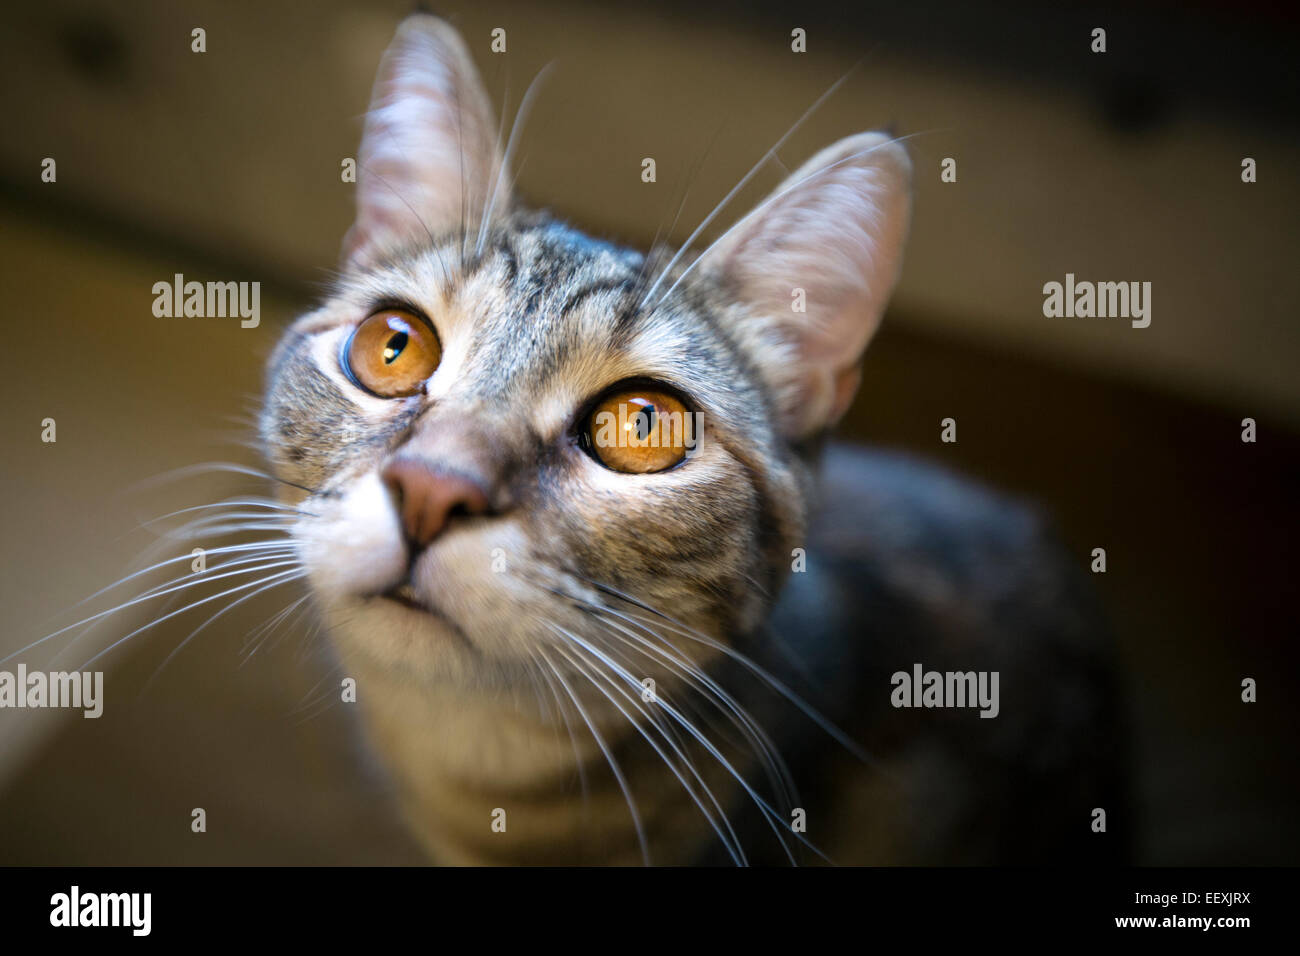 cat staring at camera Stock Photo